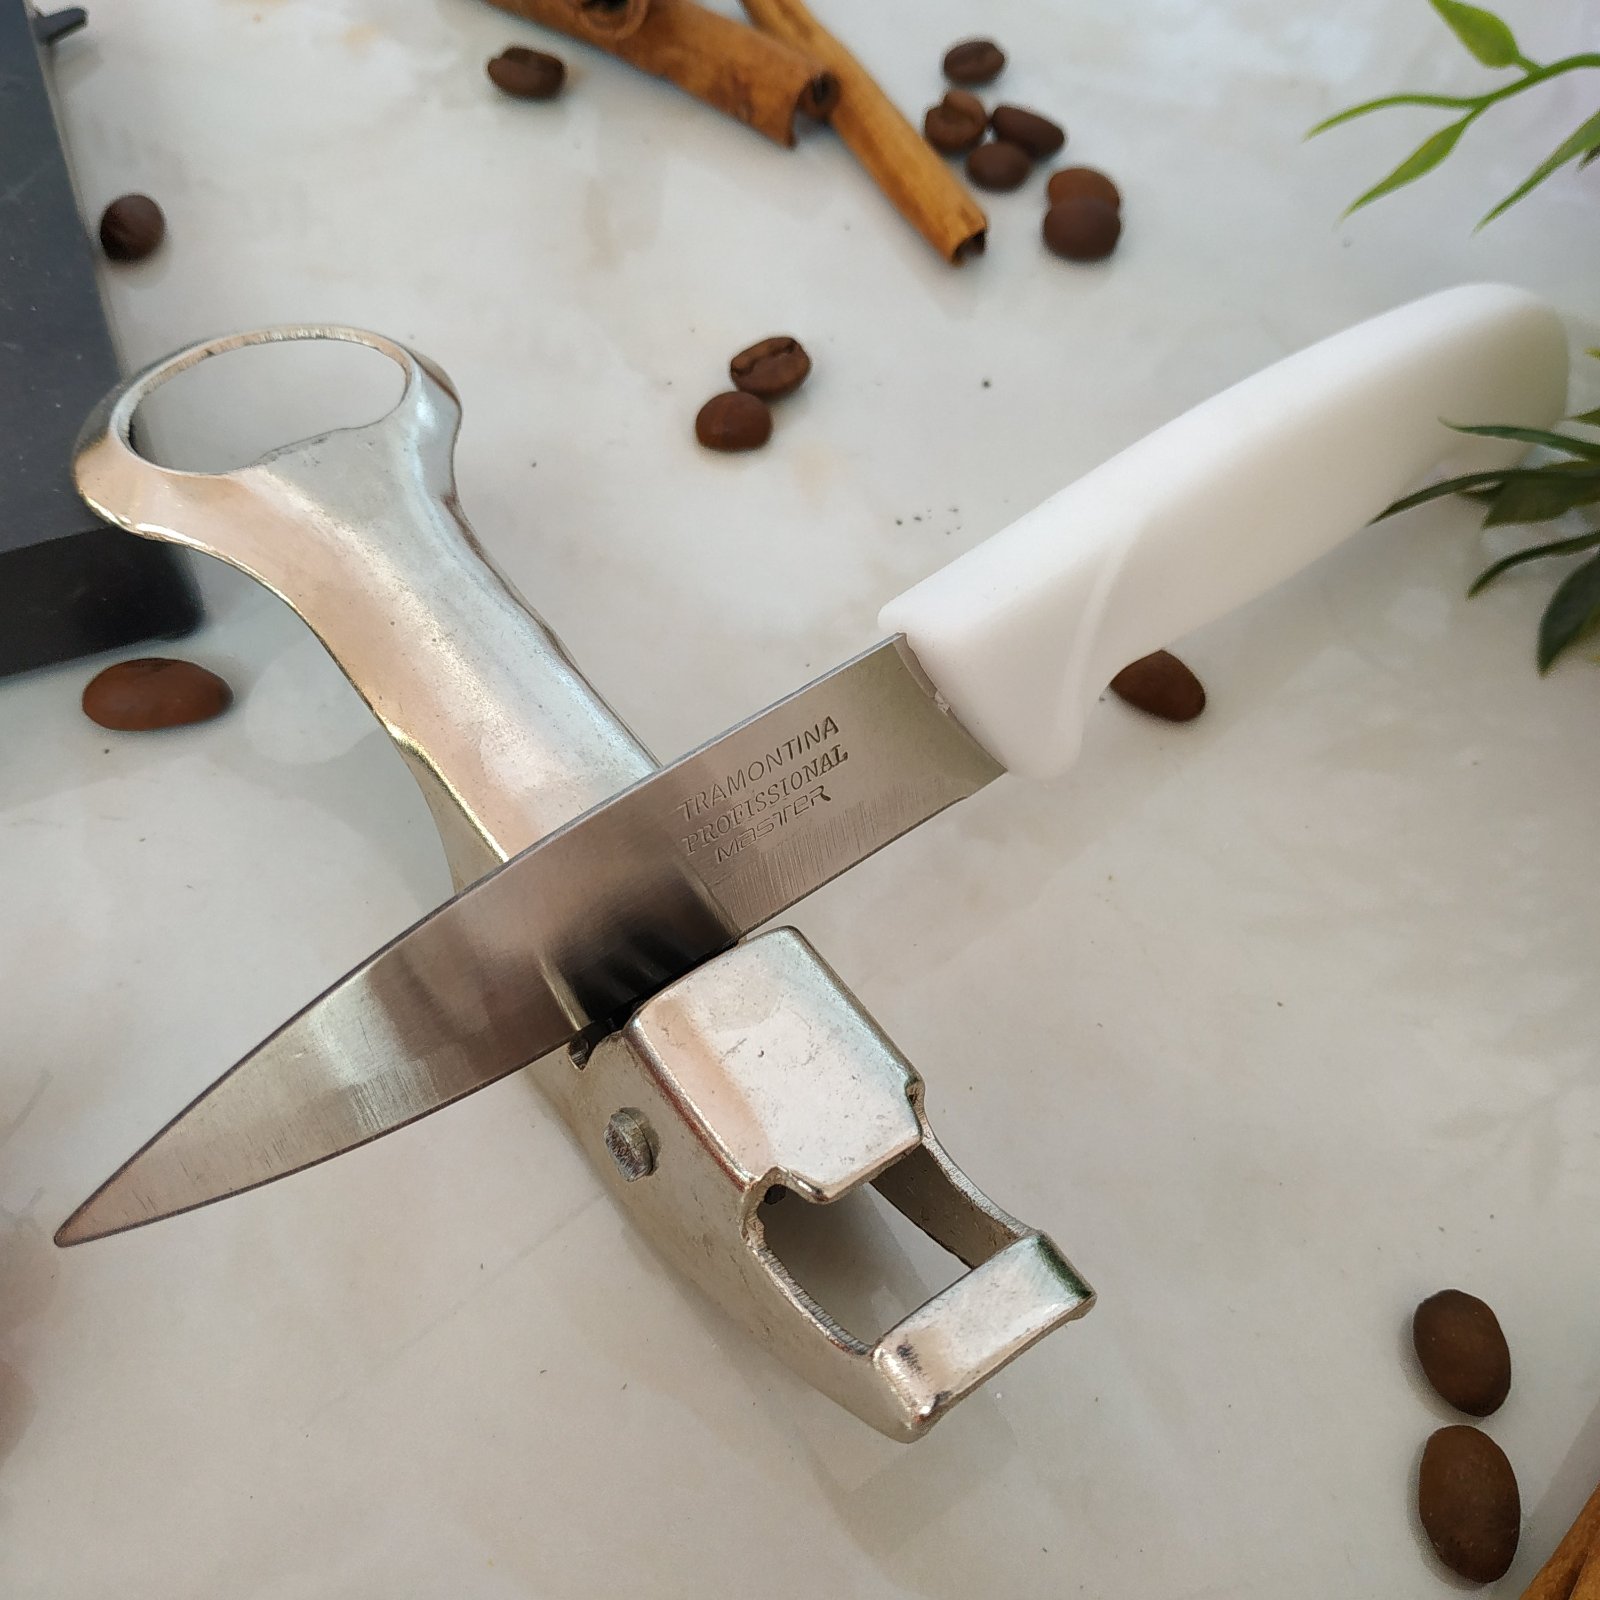 Ножеточка никелированная - 1501 ✅ базовая цена 47.95 грн. ✔ Опт ✔ Скидки ✔ Заходите! - Интернет-магазин ✅ Фортуна-опт ✅